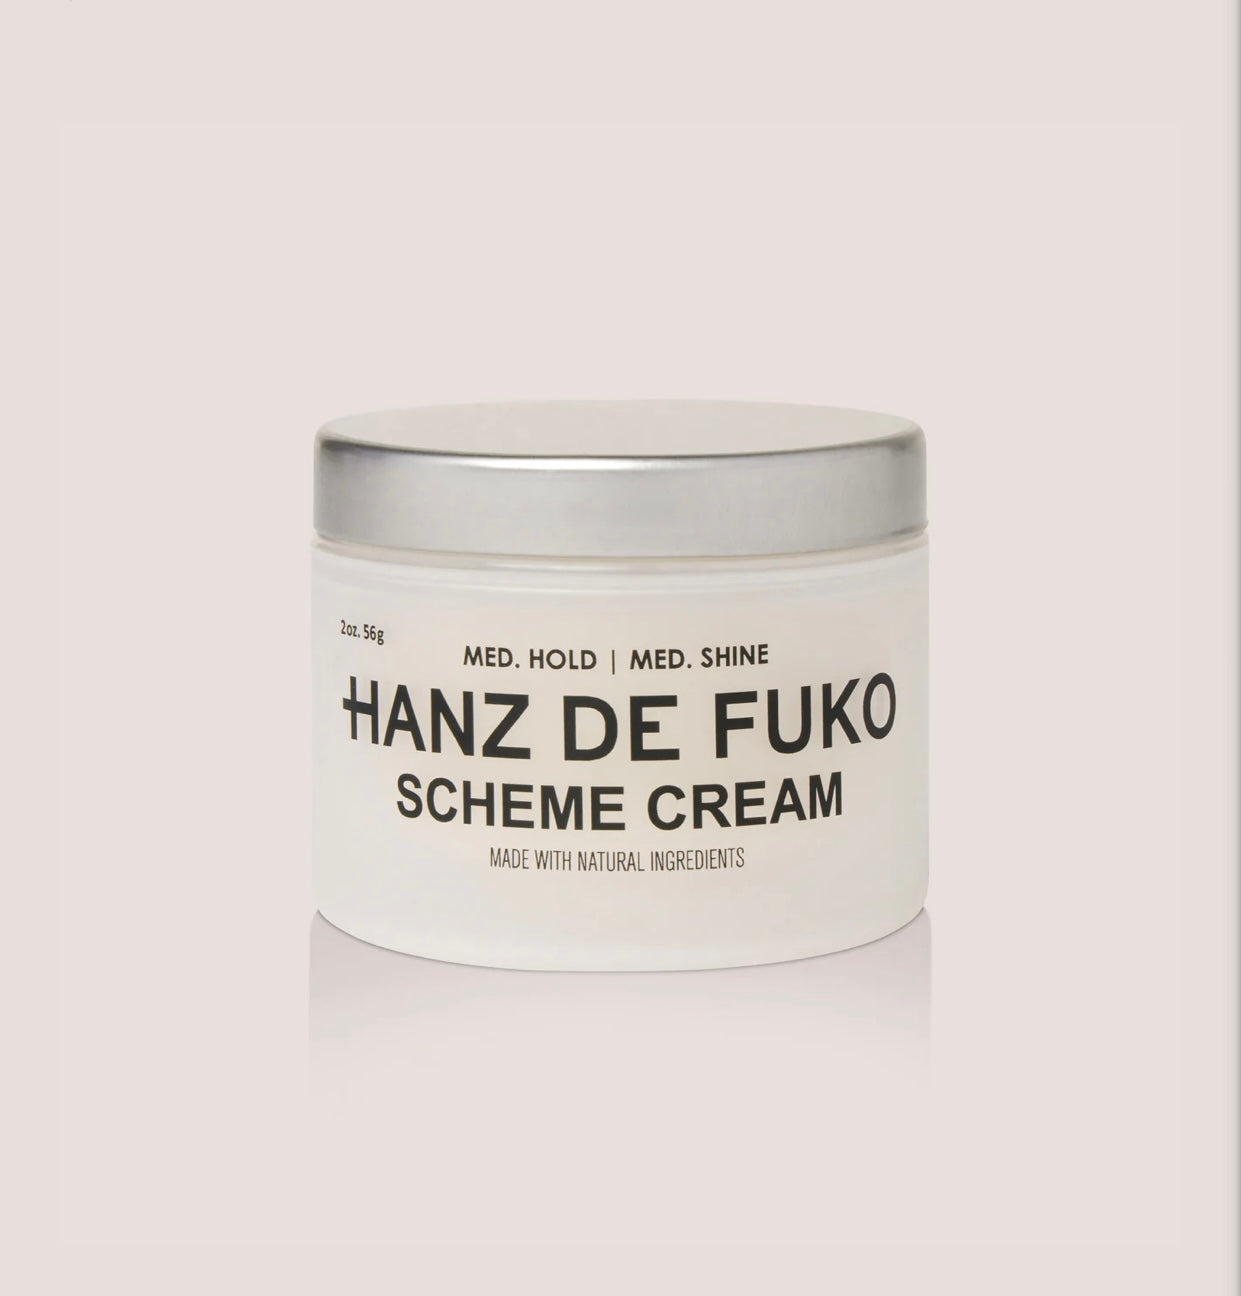 Scheme cream